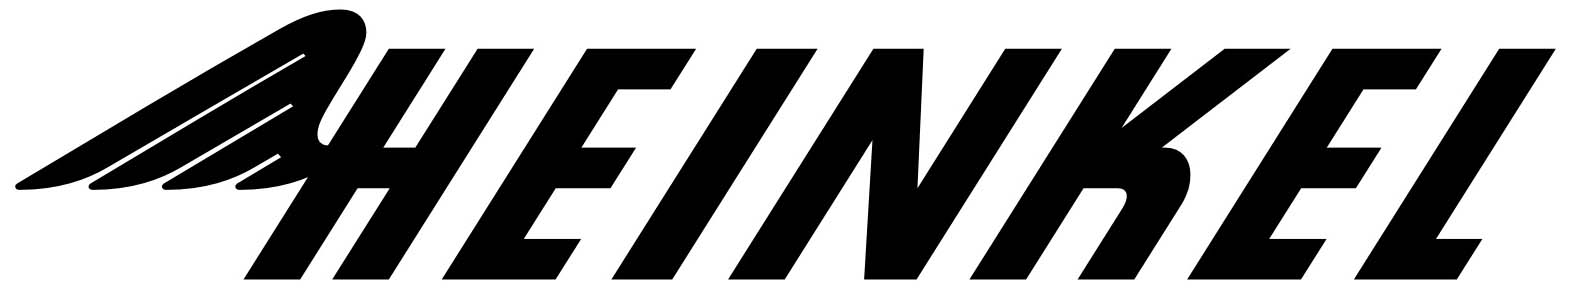 1956. Ernst Heinkel AG (logo 1956-1958)